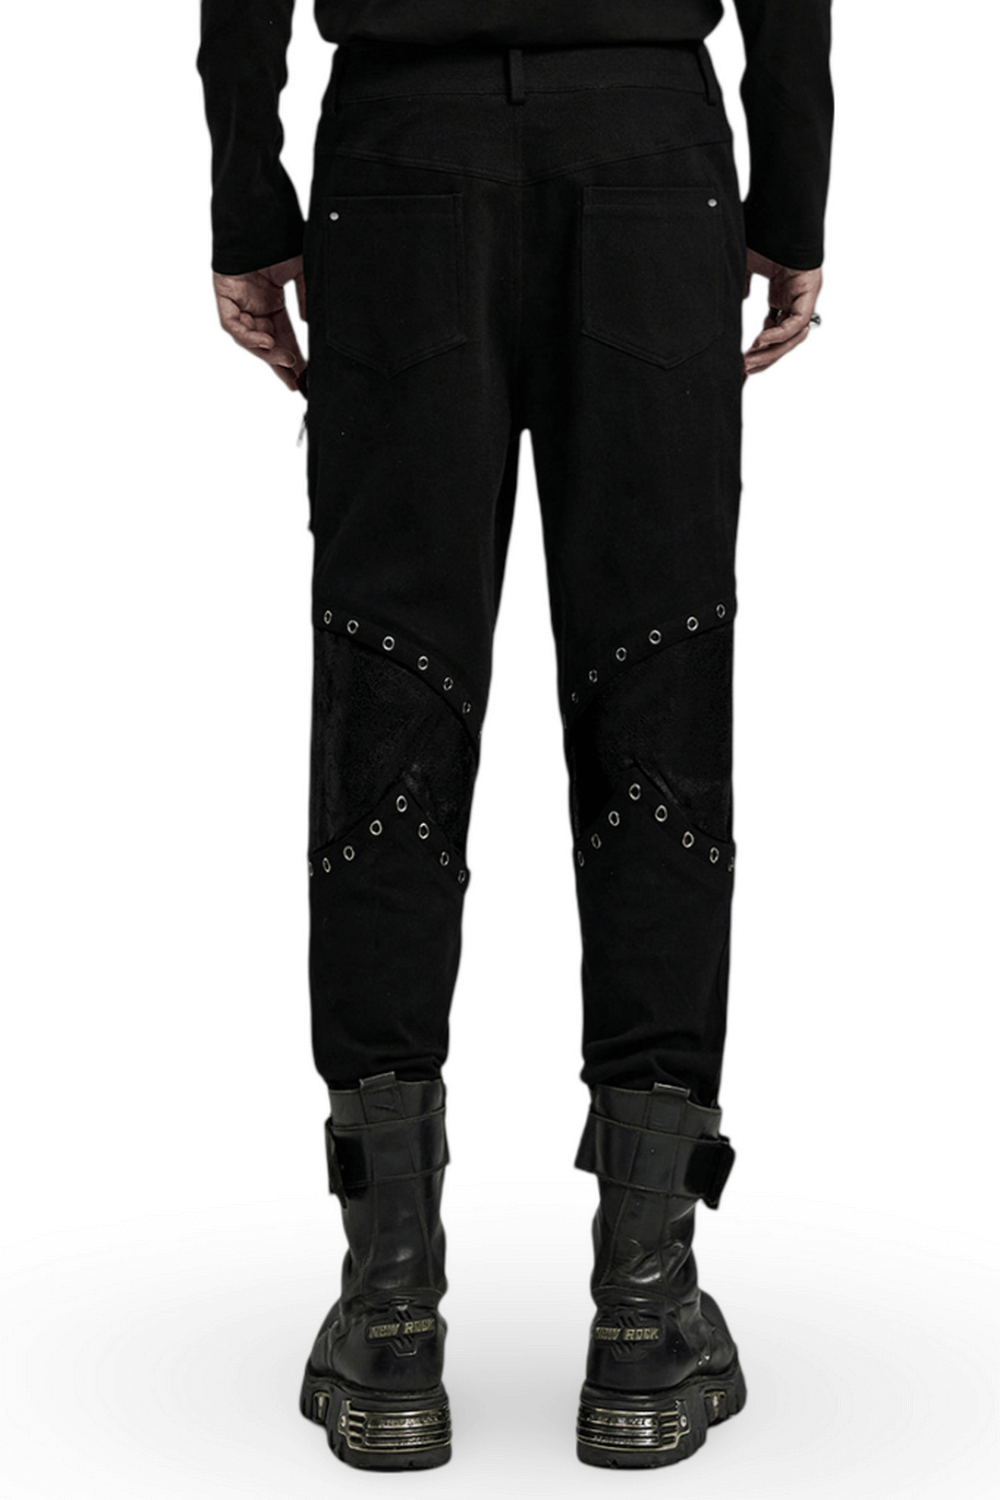 Pantalon en sergé noir Punk pour hommes avec fermetures éclair et œillets